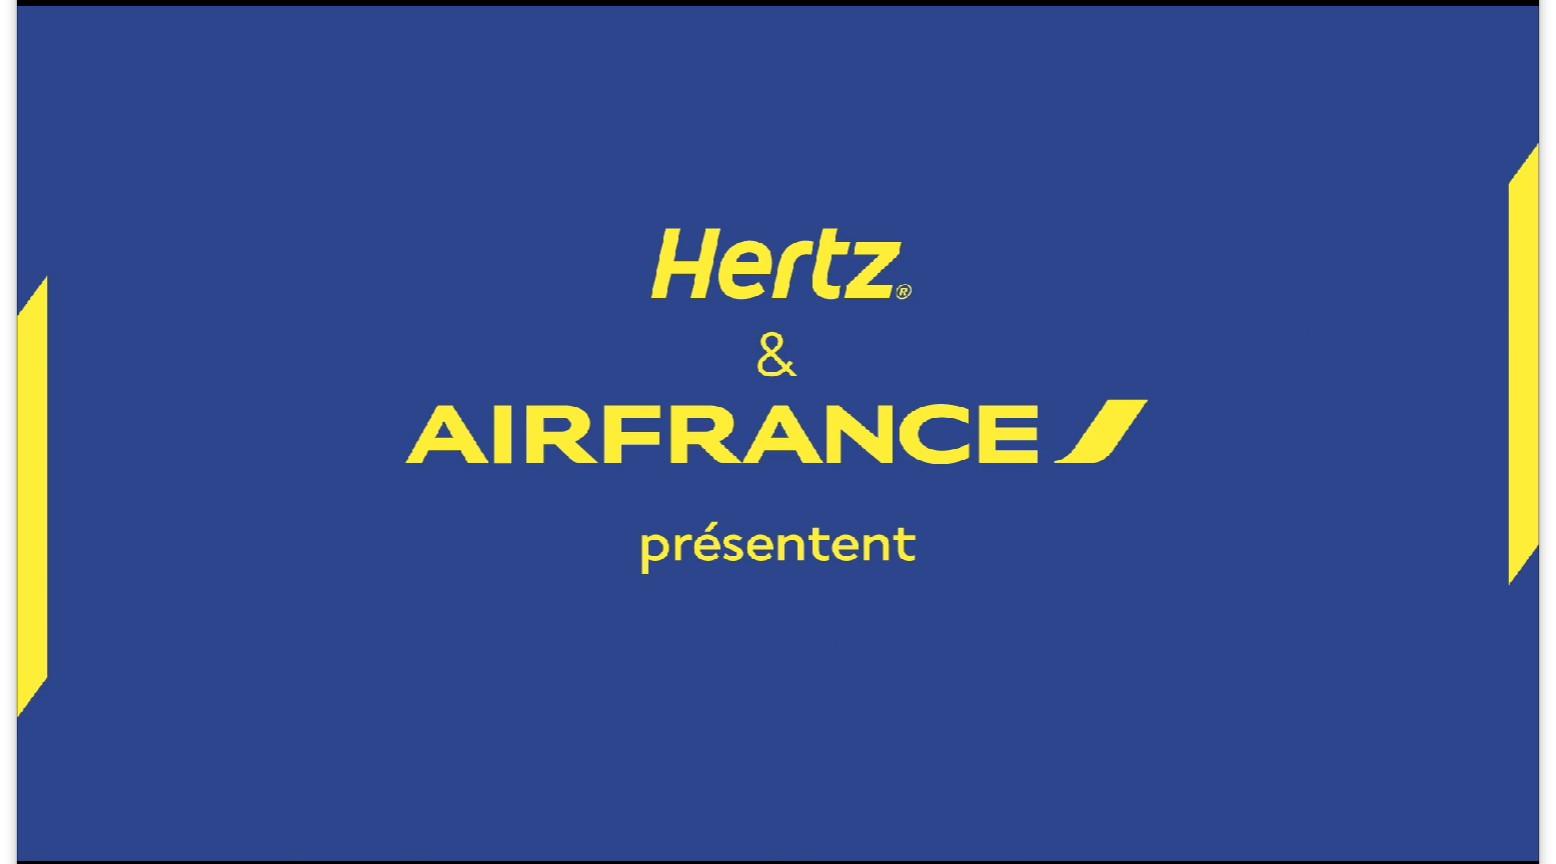 法国航空 & 赫兹租车旅行广告